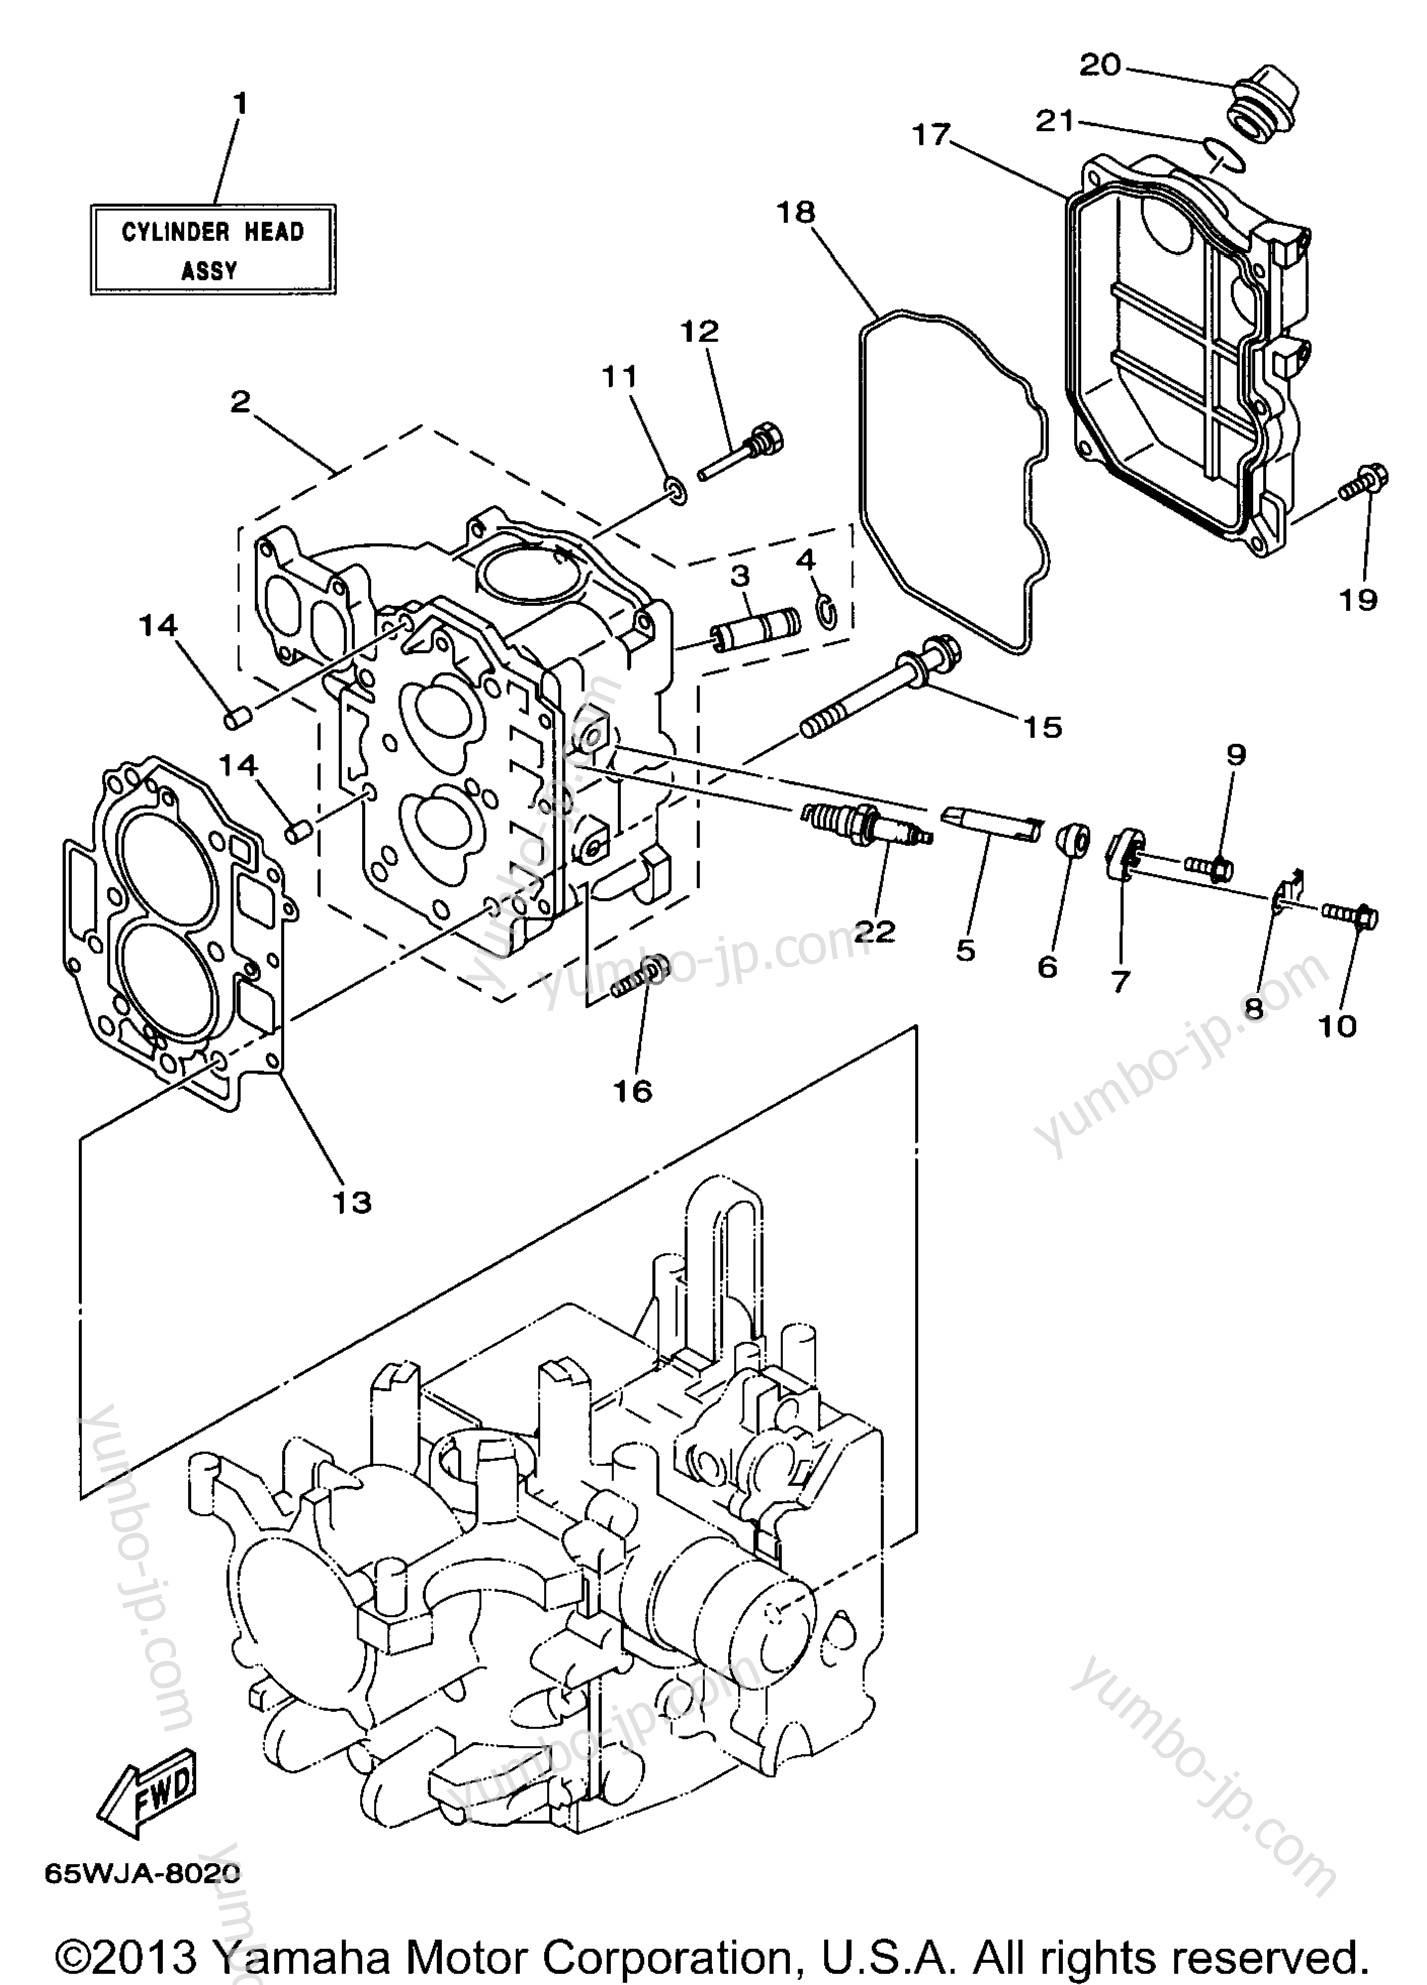 Cylinder Crankcase 2 для лодочных моторов YAMAHA F25ESHW 1998 г.